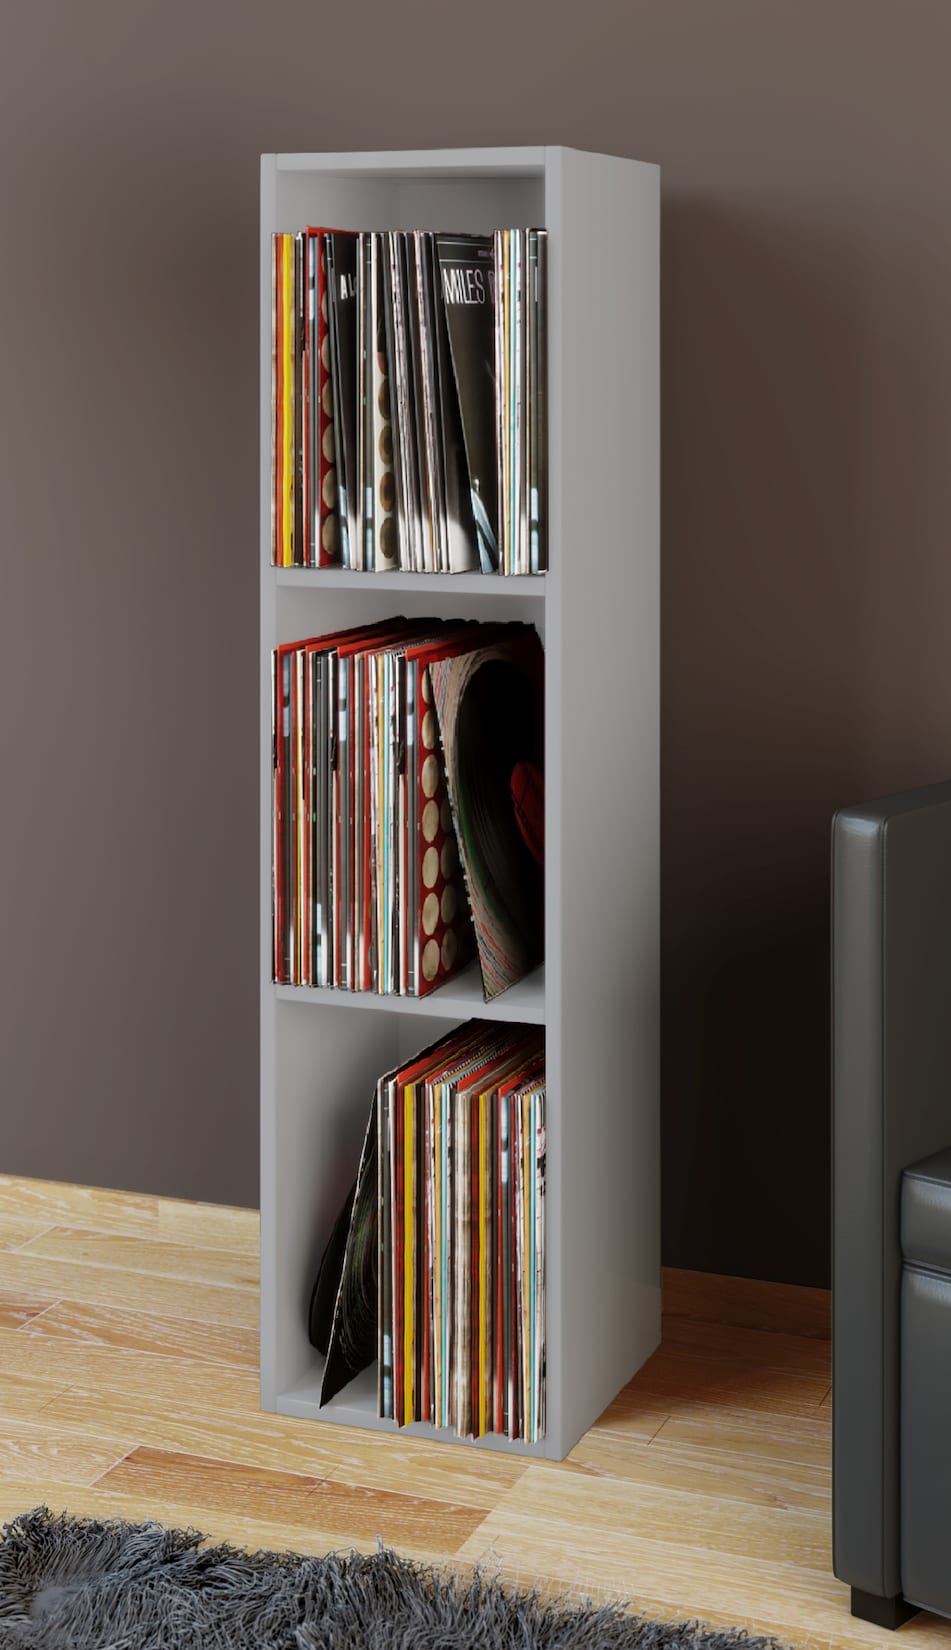 VCM Holz Schallplatten LP Stand Regal Archivierung Ständer Aufbewahrung Platto 3fach